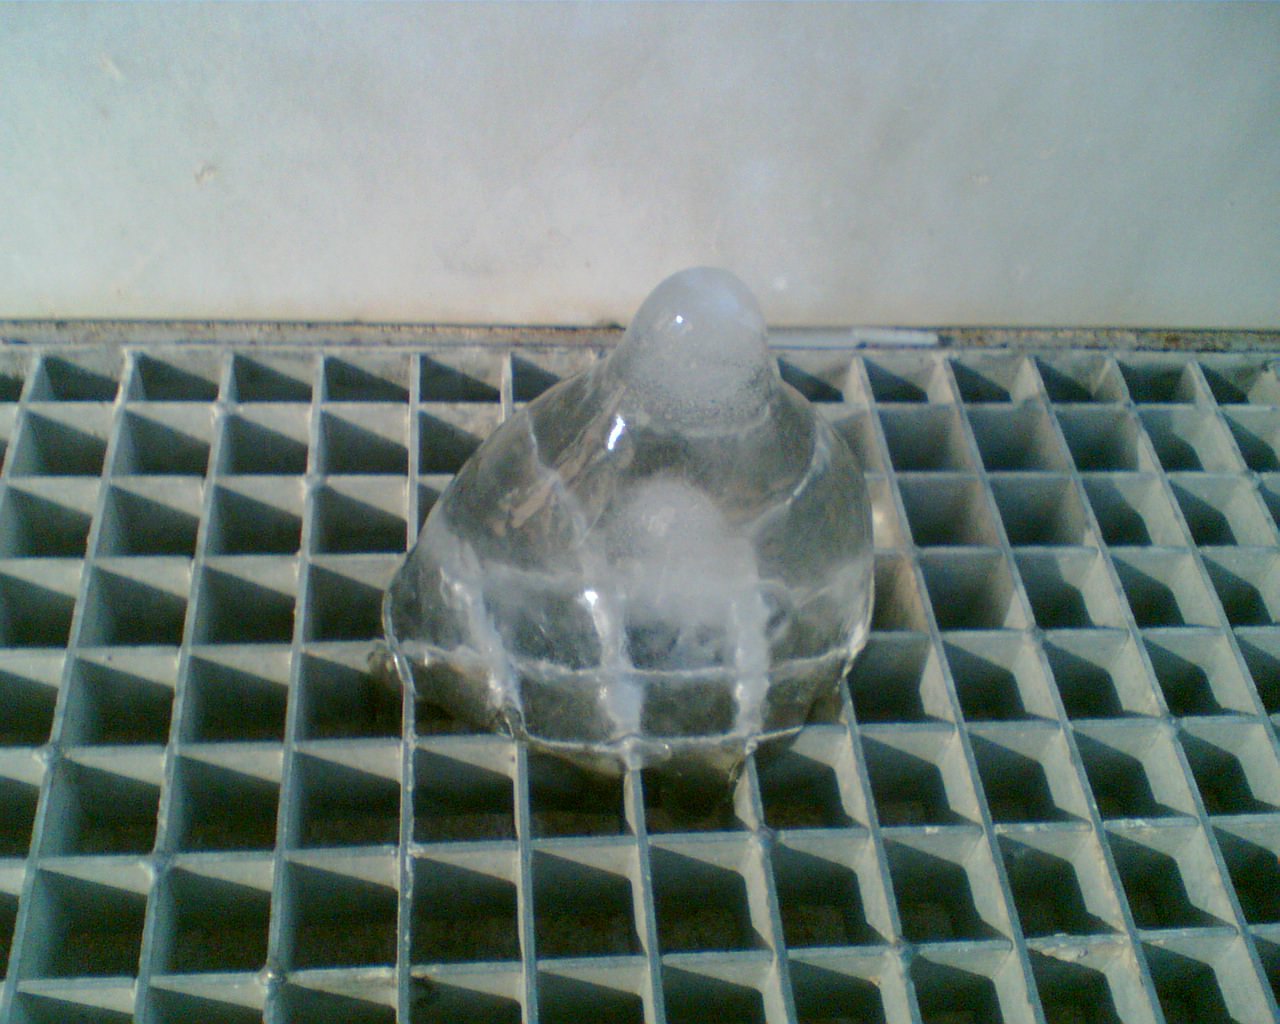 Frozen drop